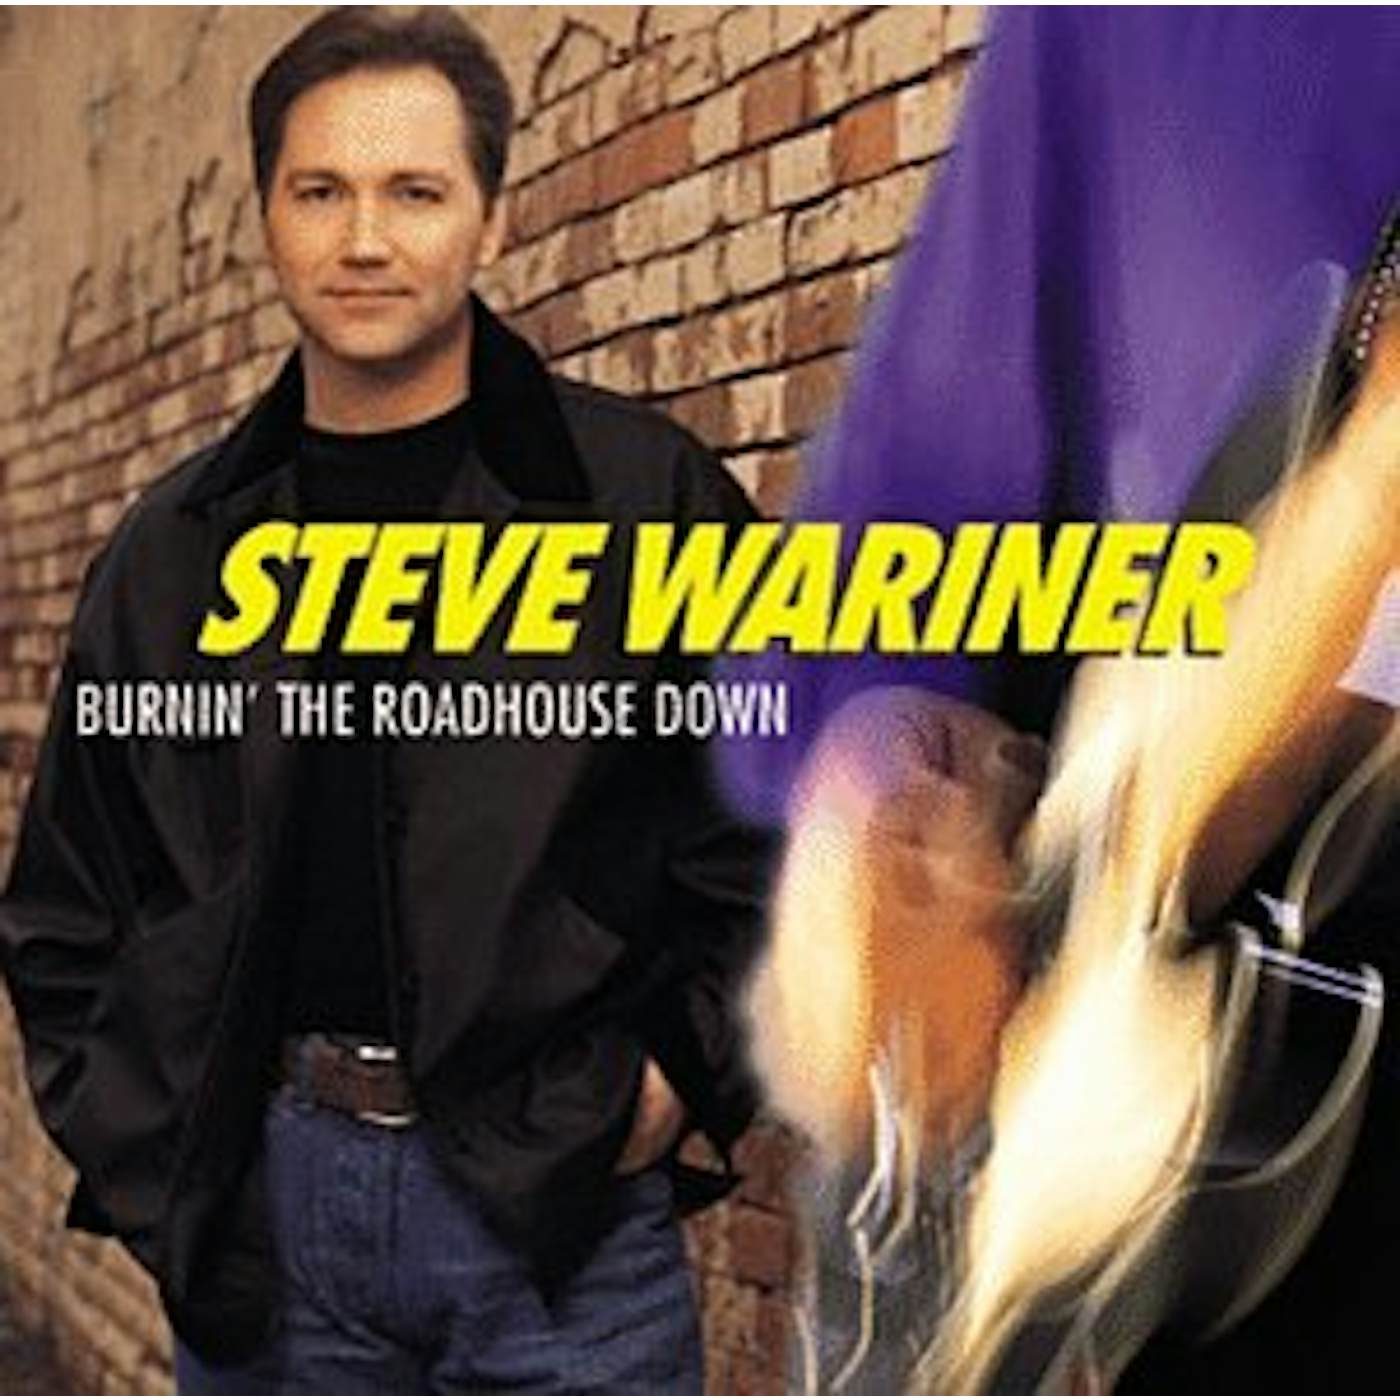 Steve Wariner BURNIN THE ROADHOUSE DOWN CD